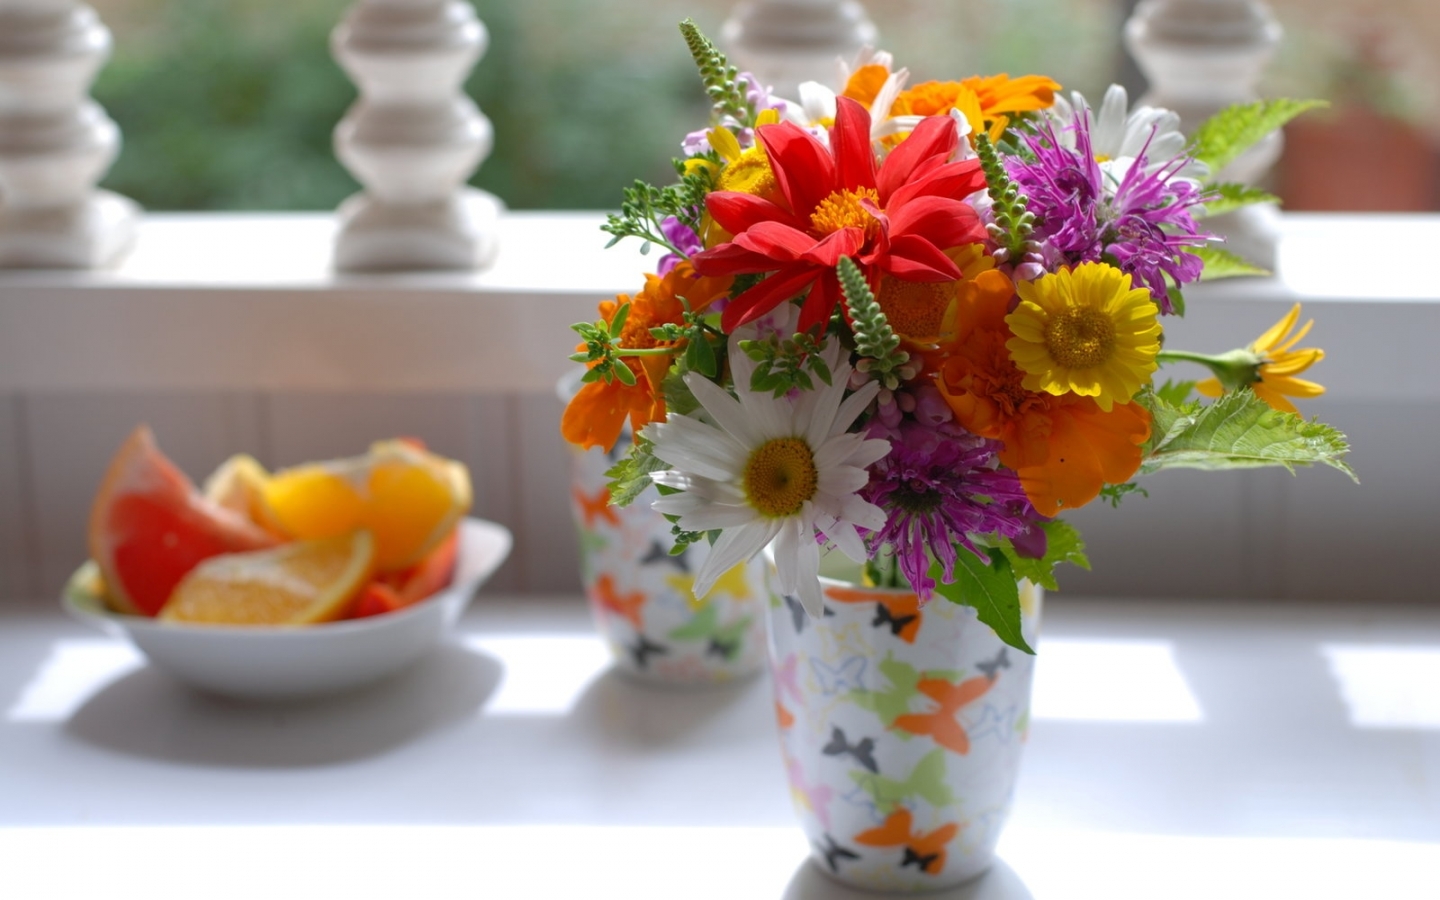 Скачать обои бесплатно Букеты, Цветы, Растения картинка на рабочий стол ПК